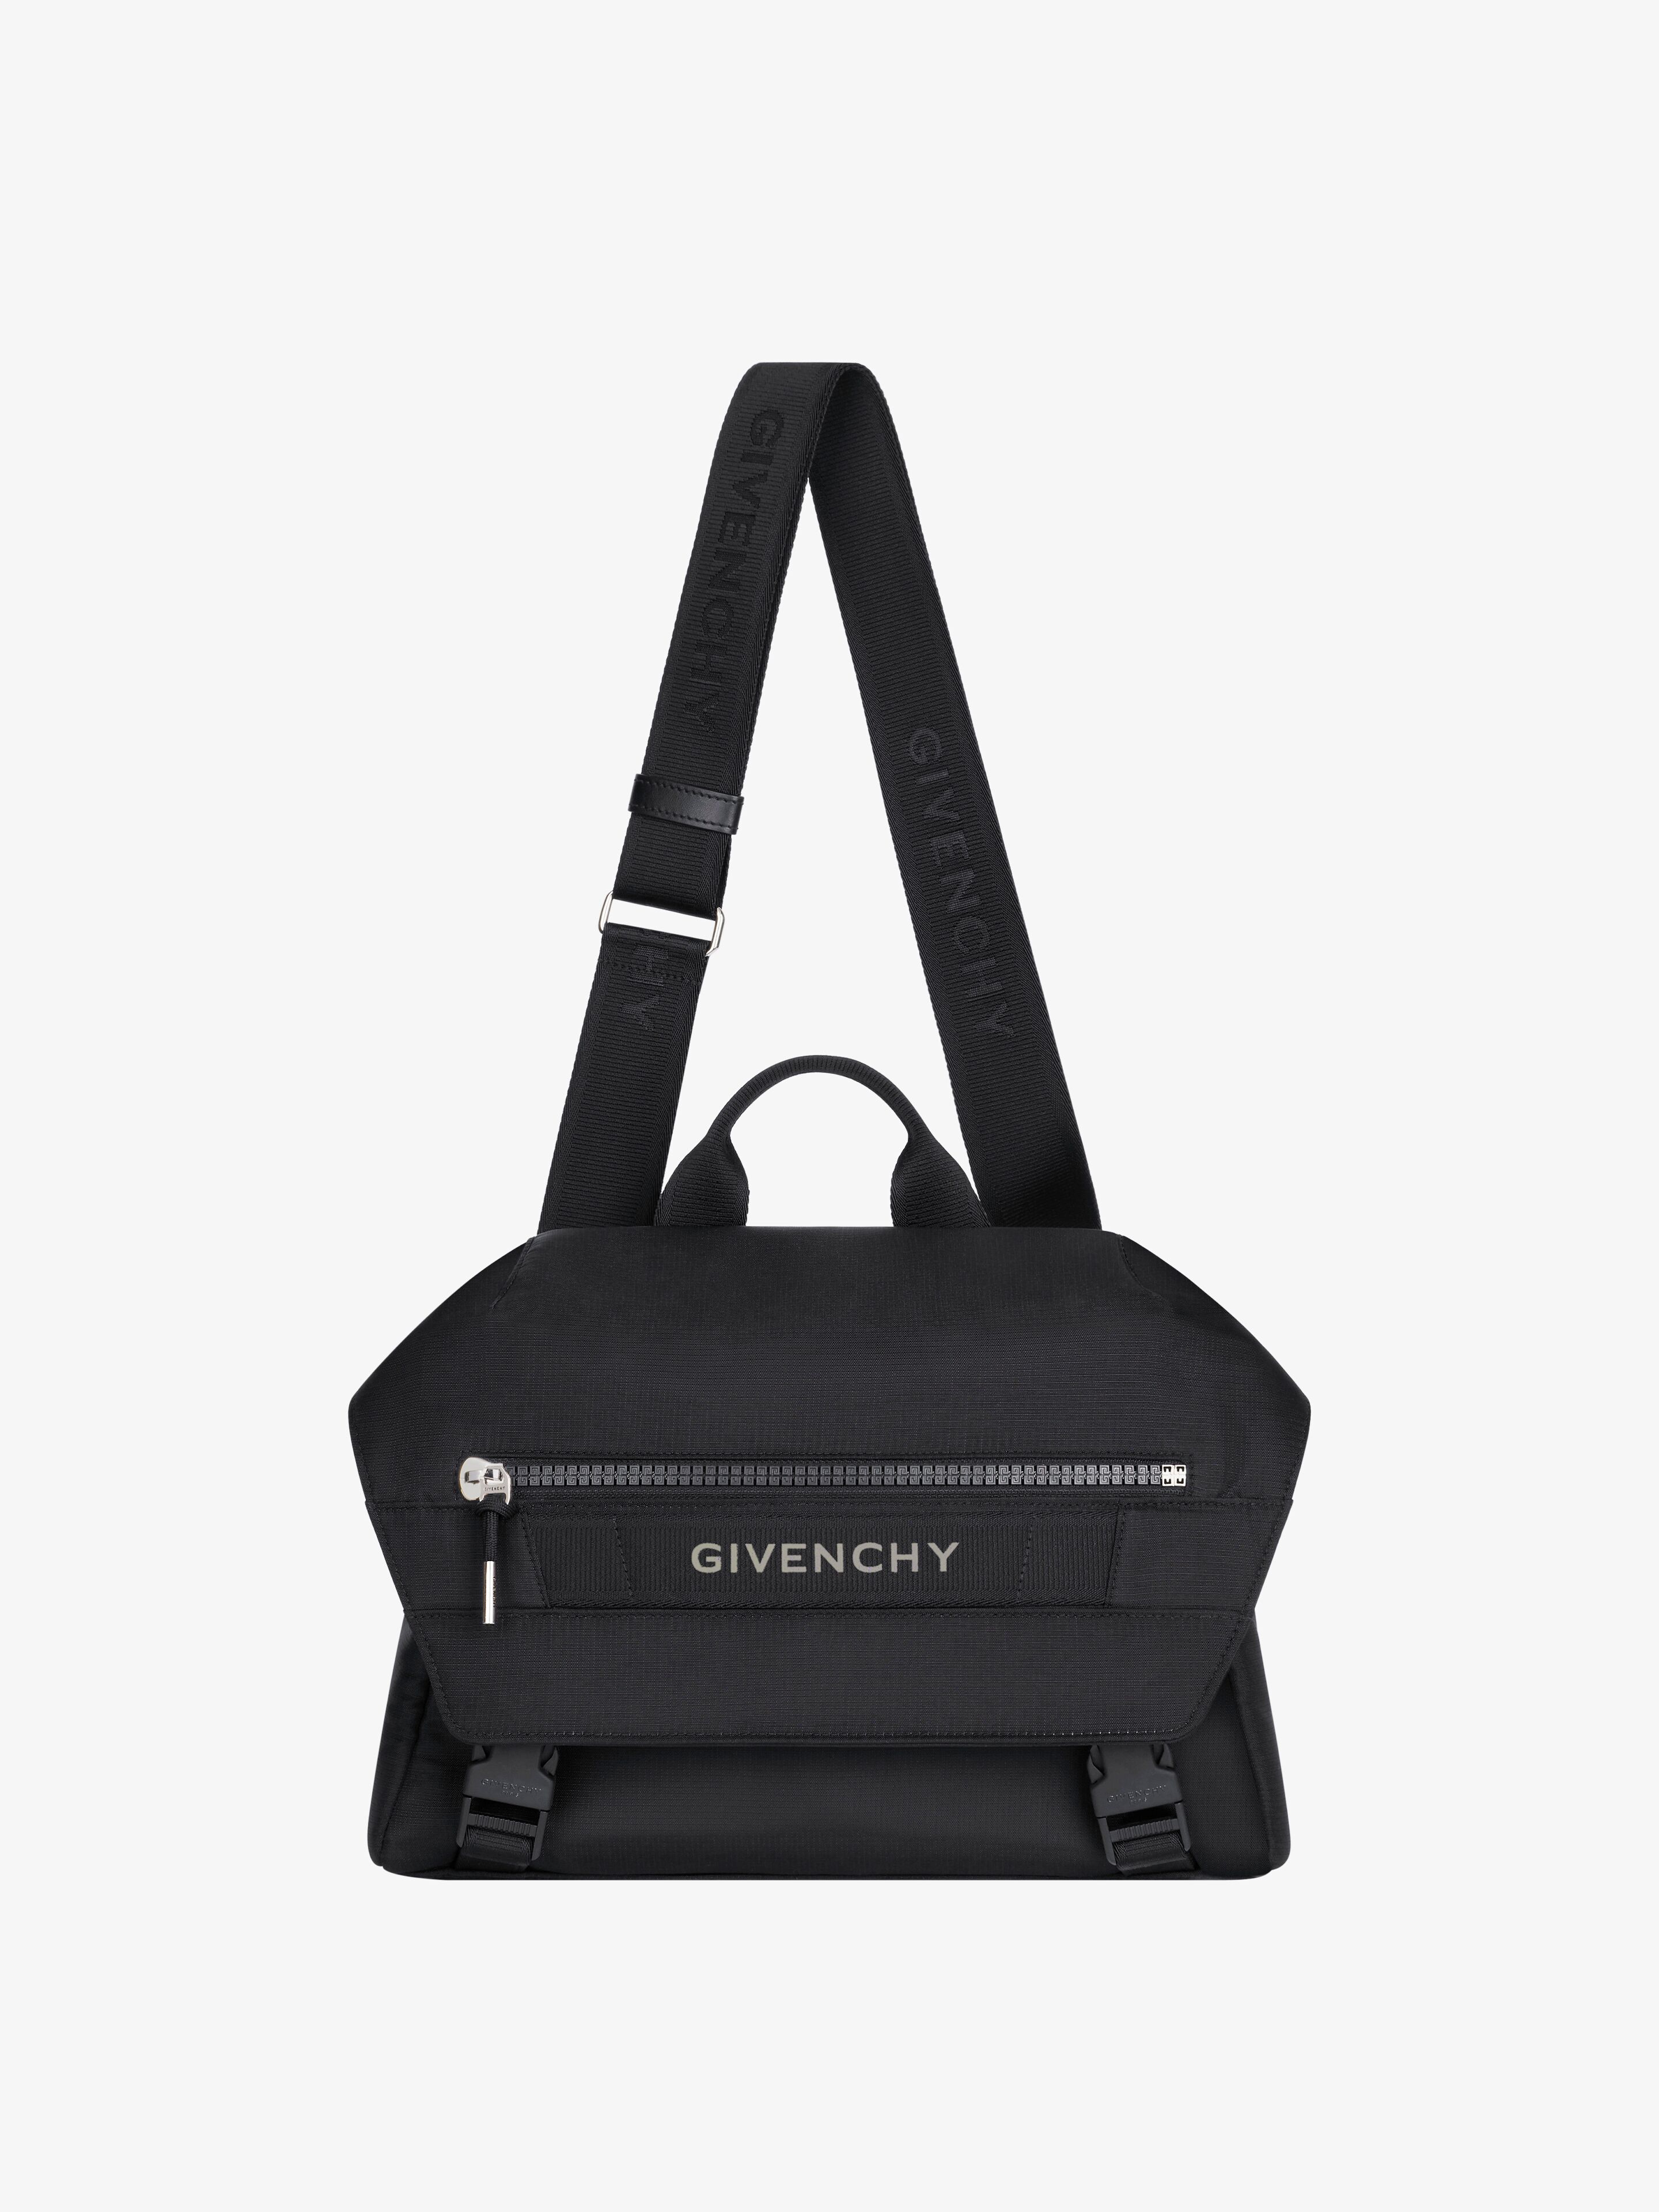 Givenchy Men's G-trek Messenger Bag In Nylon In Multicolor